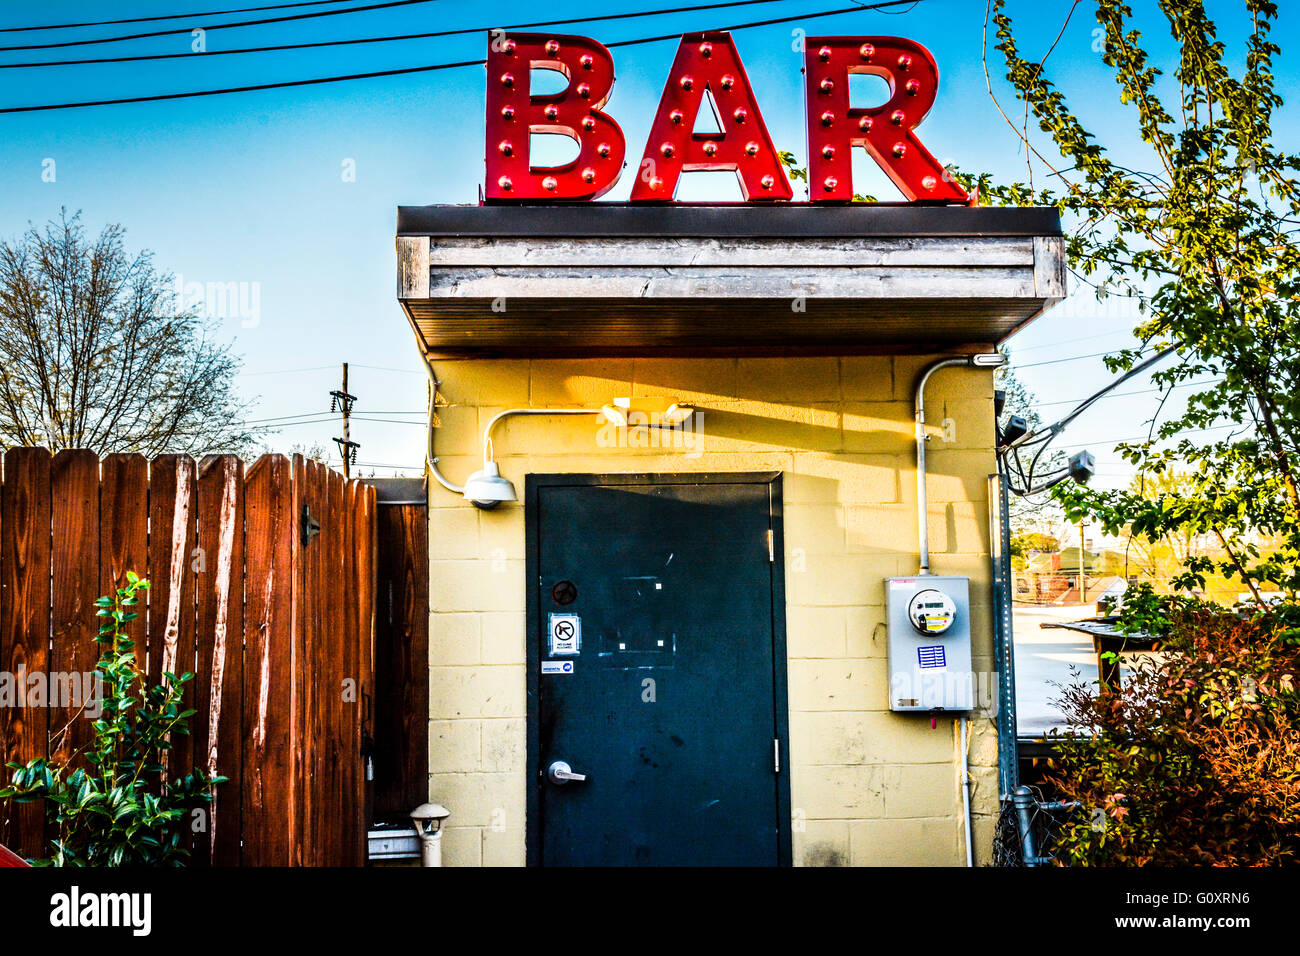 Eine niedrige Konzept industrielle Kante eine Hintertür Eingang zum Dive Bar mit einem riesigen roten Schild "BAR" am Dach scheint seltsam und arty Stockfoto